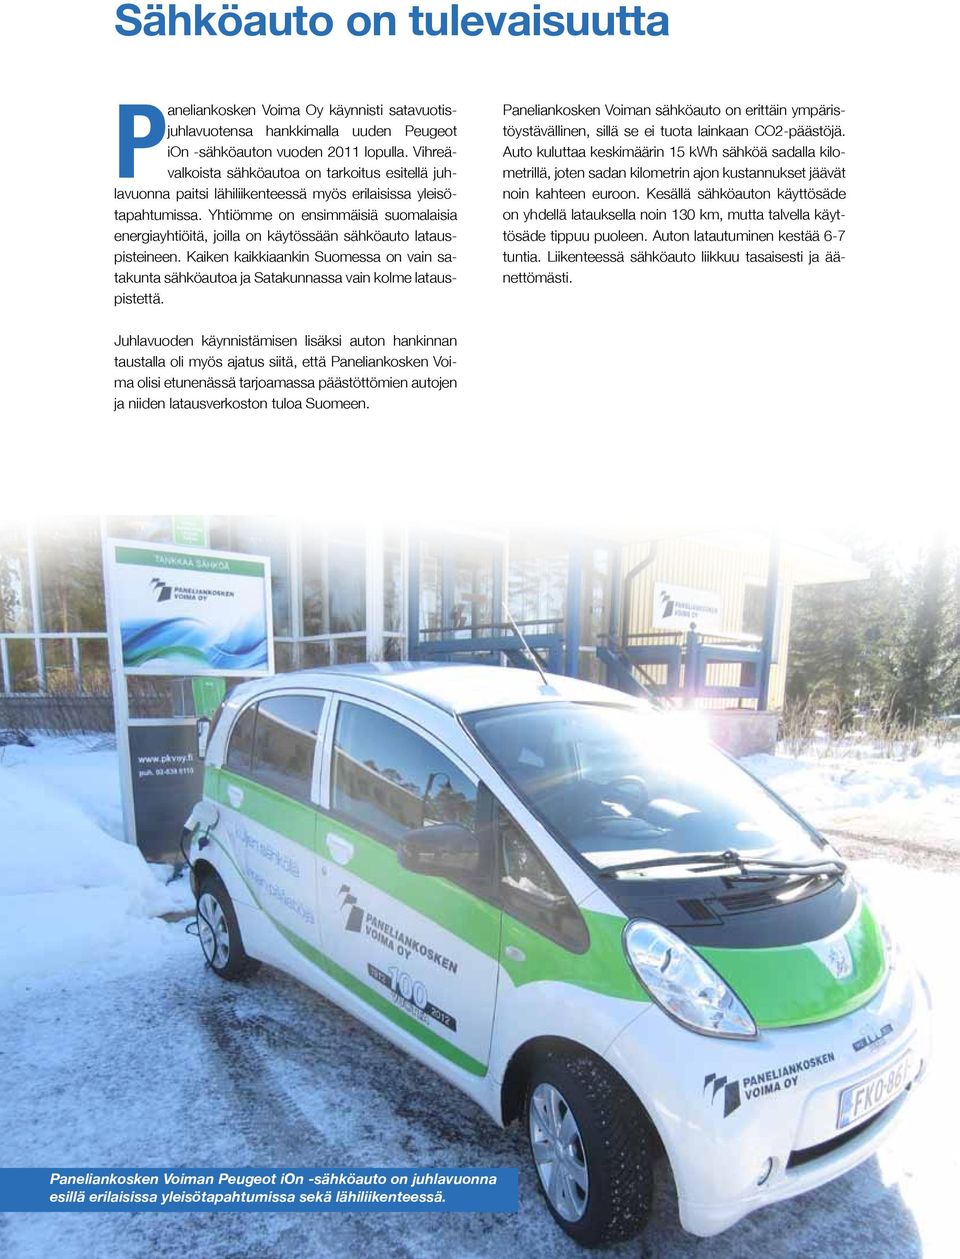 Yhtiömme on ensimmäisiä suomalaisia energiayhtiöitä, joilla on käytössään sähköauto latauspisteineen.